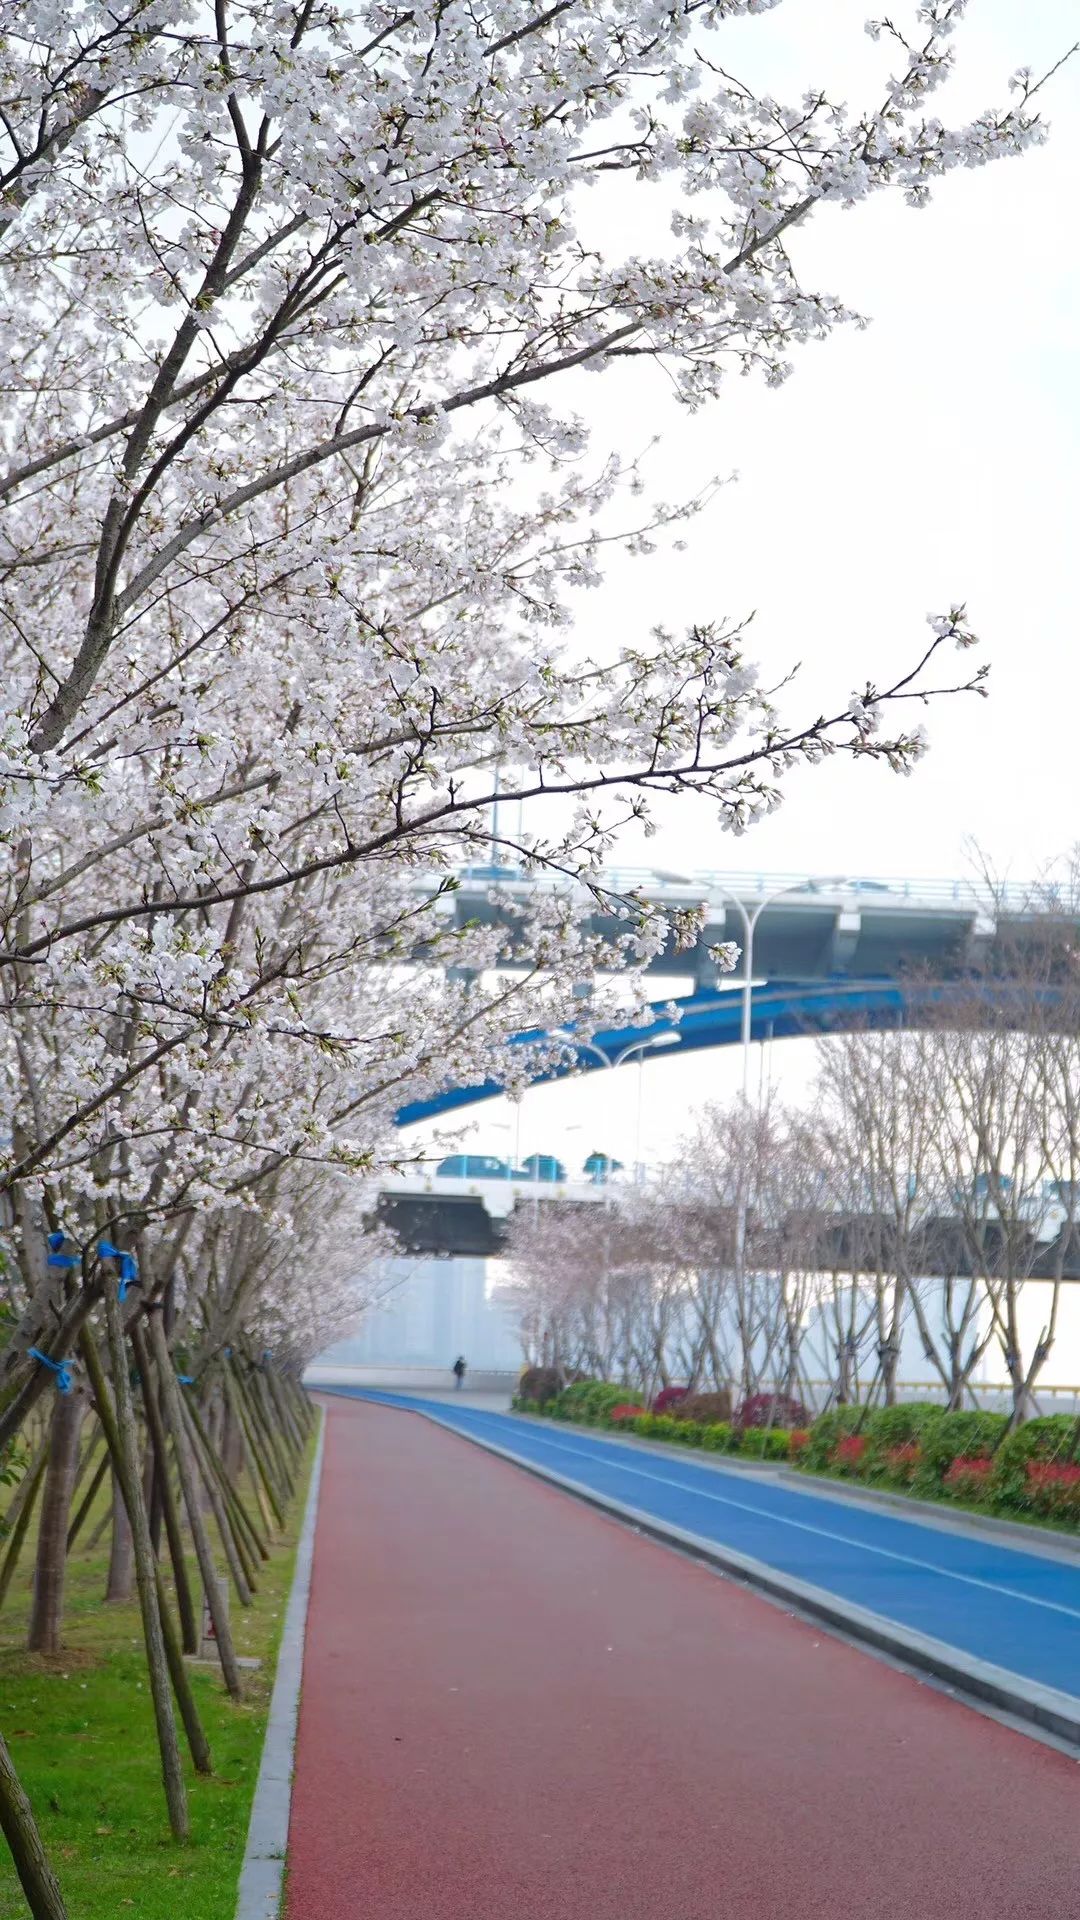 滨江闻涛路这条最美跑道,成为杭城的最新颜值担当,今年如期,樱花盛开